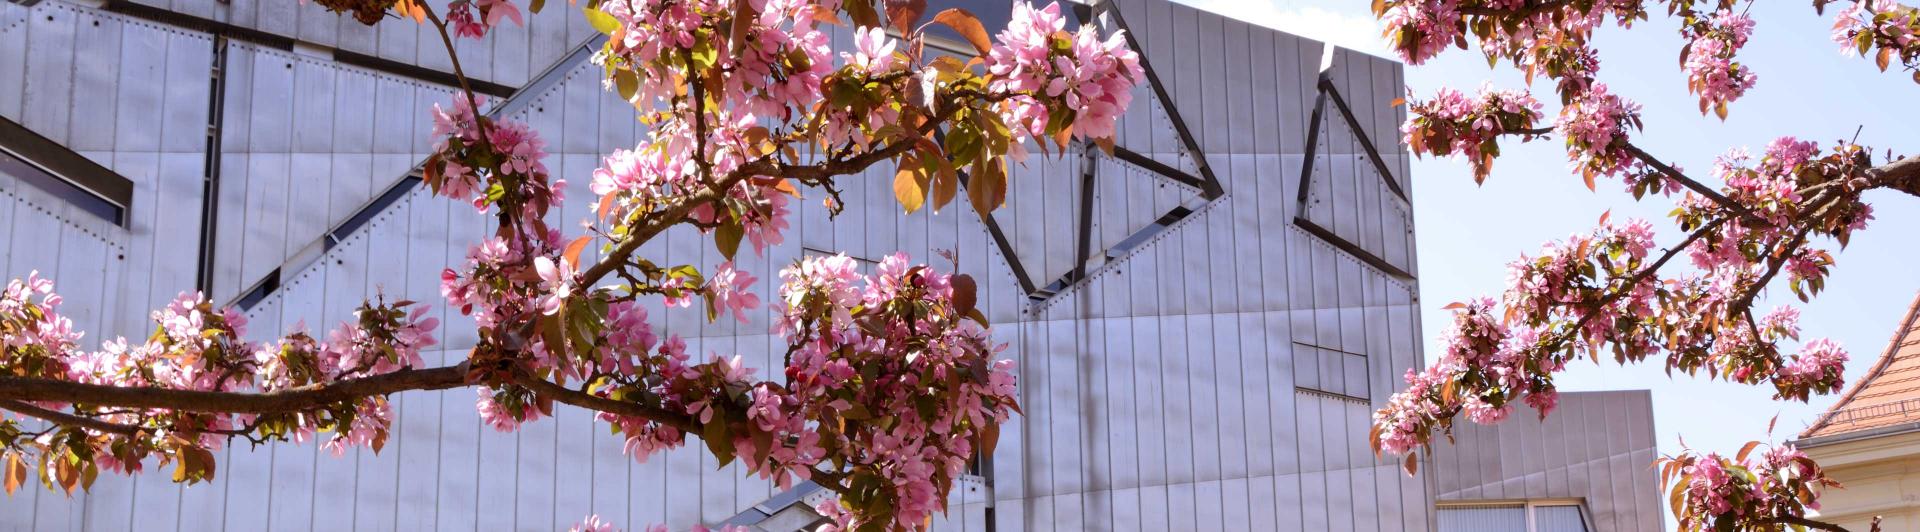 Im Vordergrund sind Kirschblüten zu sehen, im Hintergrund ein graues geometrisches Gebäude, der Libeskind-Bau des Jüdischen Museums Berlin.